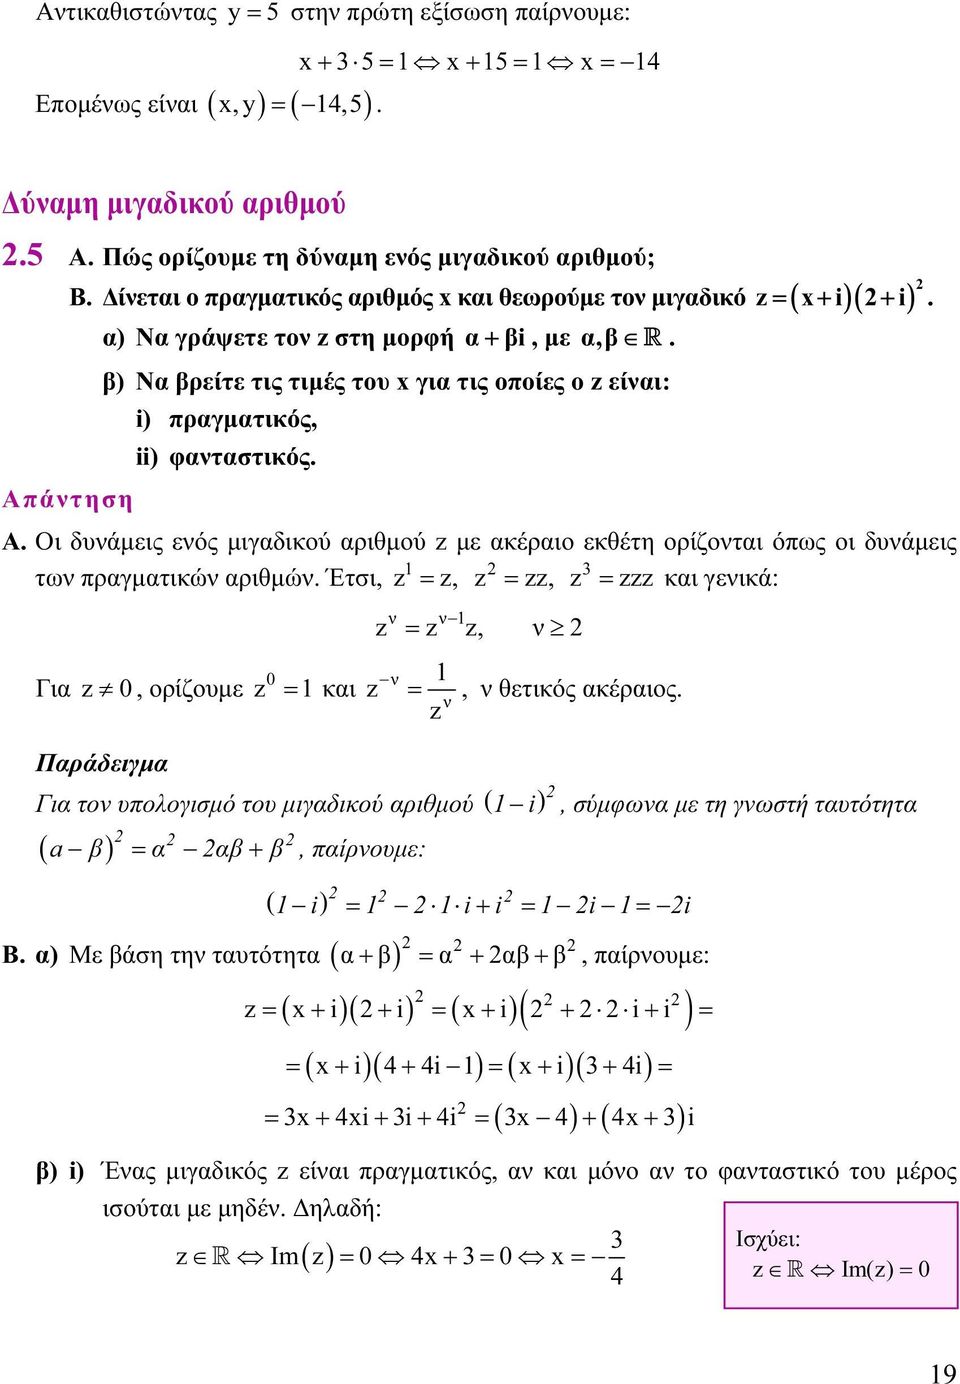 αριθμού με ακέραιο εκθέτη ορίζοται όπως οι δυάμεις 3 τω πραγματικώ αριθμώ Έτσι, =, =, = και γεικά: Για 0, ορίζουμε 0 = και =, =, θετικός ακέραιος Παράδειγμα Για το υπολογισμό του μιγαδικού αριθμού (